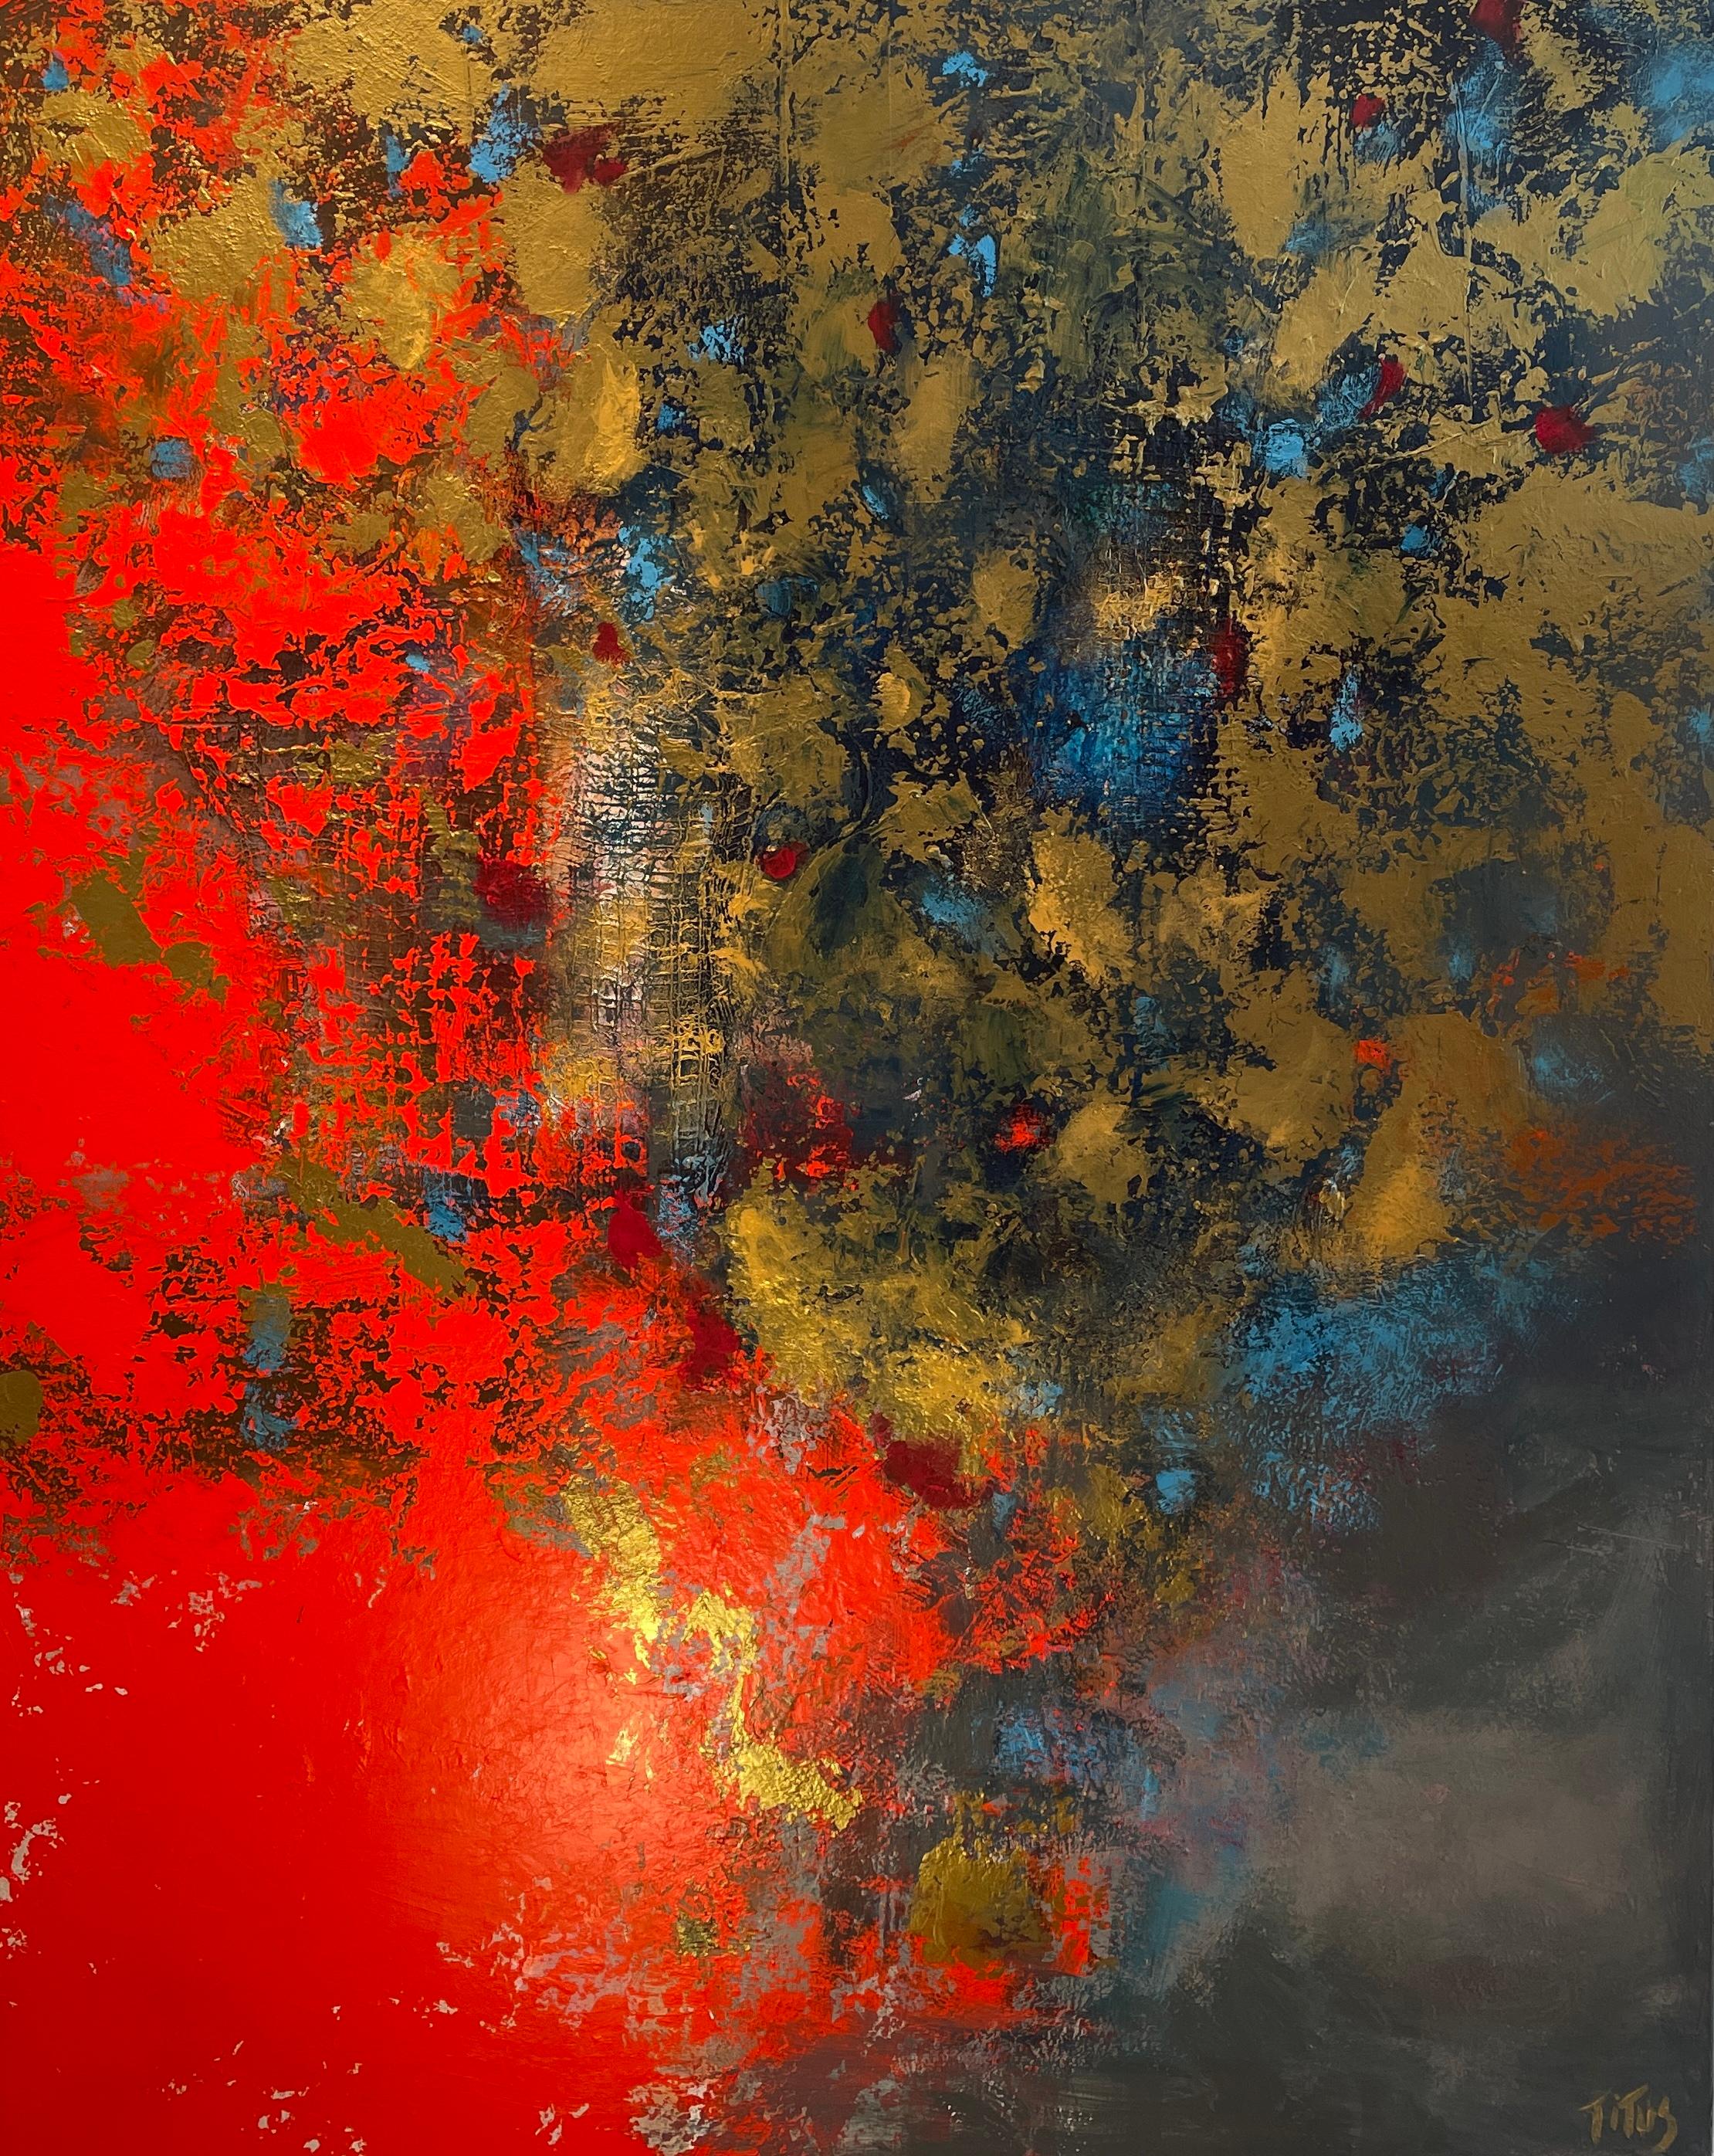 Das Gemälde "Consciousness" von Mary Titus ist eine lebendige Darstellung der emotionalen Intensität durch den abstrakten Expressionismus. Die Leinwand wird von einem feurigen Rot dominiert, das nach oben zu lodern scheint und ein Gefühl von